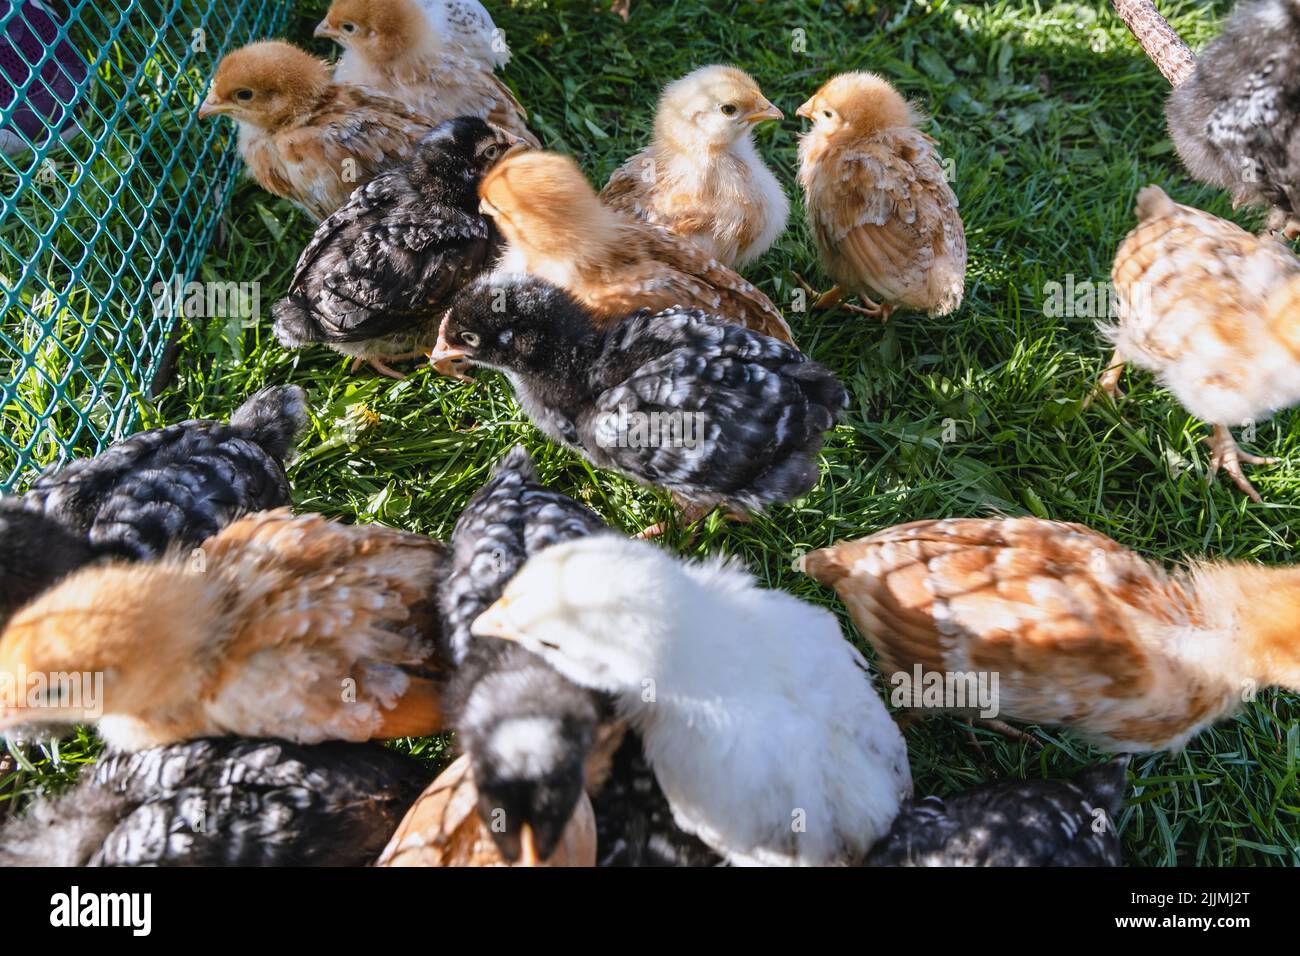 Campagne en Pologne, région de Mazowsze, élevage de poulets sur une ferme Banque D'Images